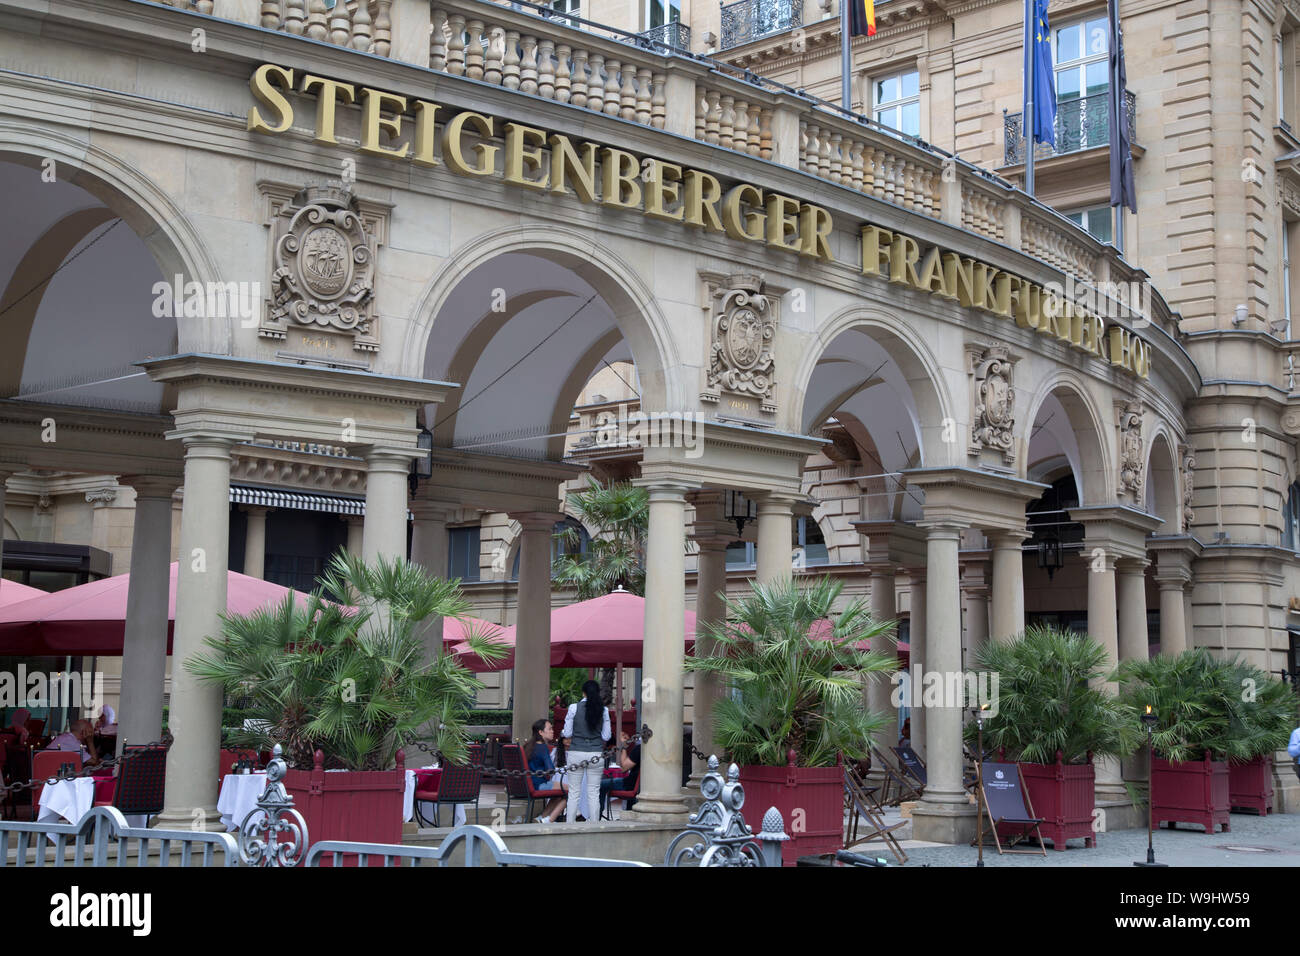 Steigenberger Frankfurter Hof Restaurant and Cafe; Frankfurt; Germany Stock Photo